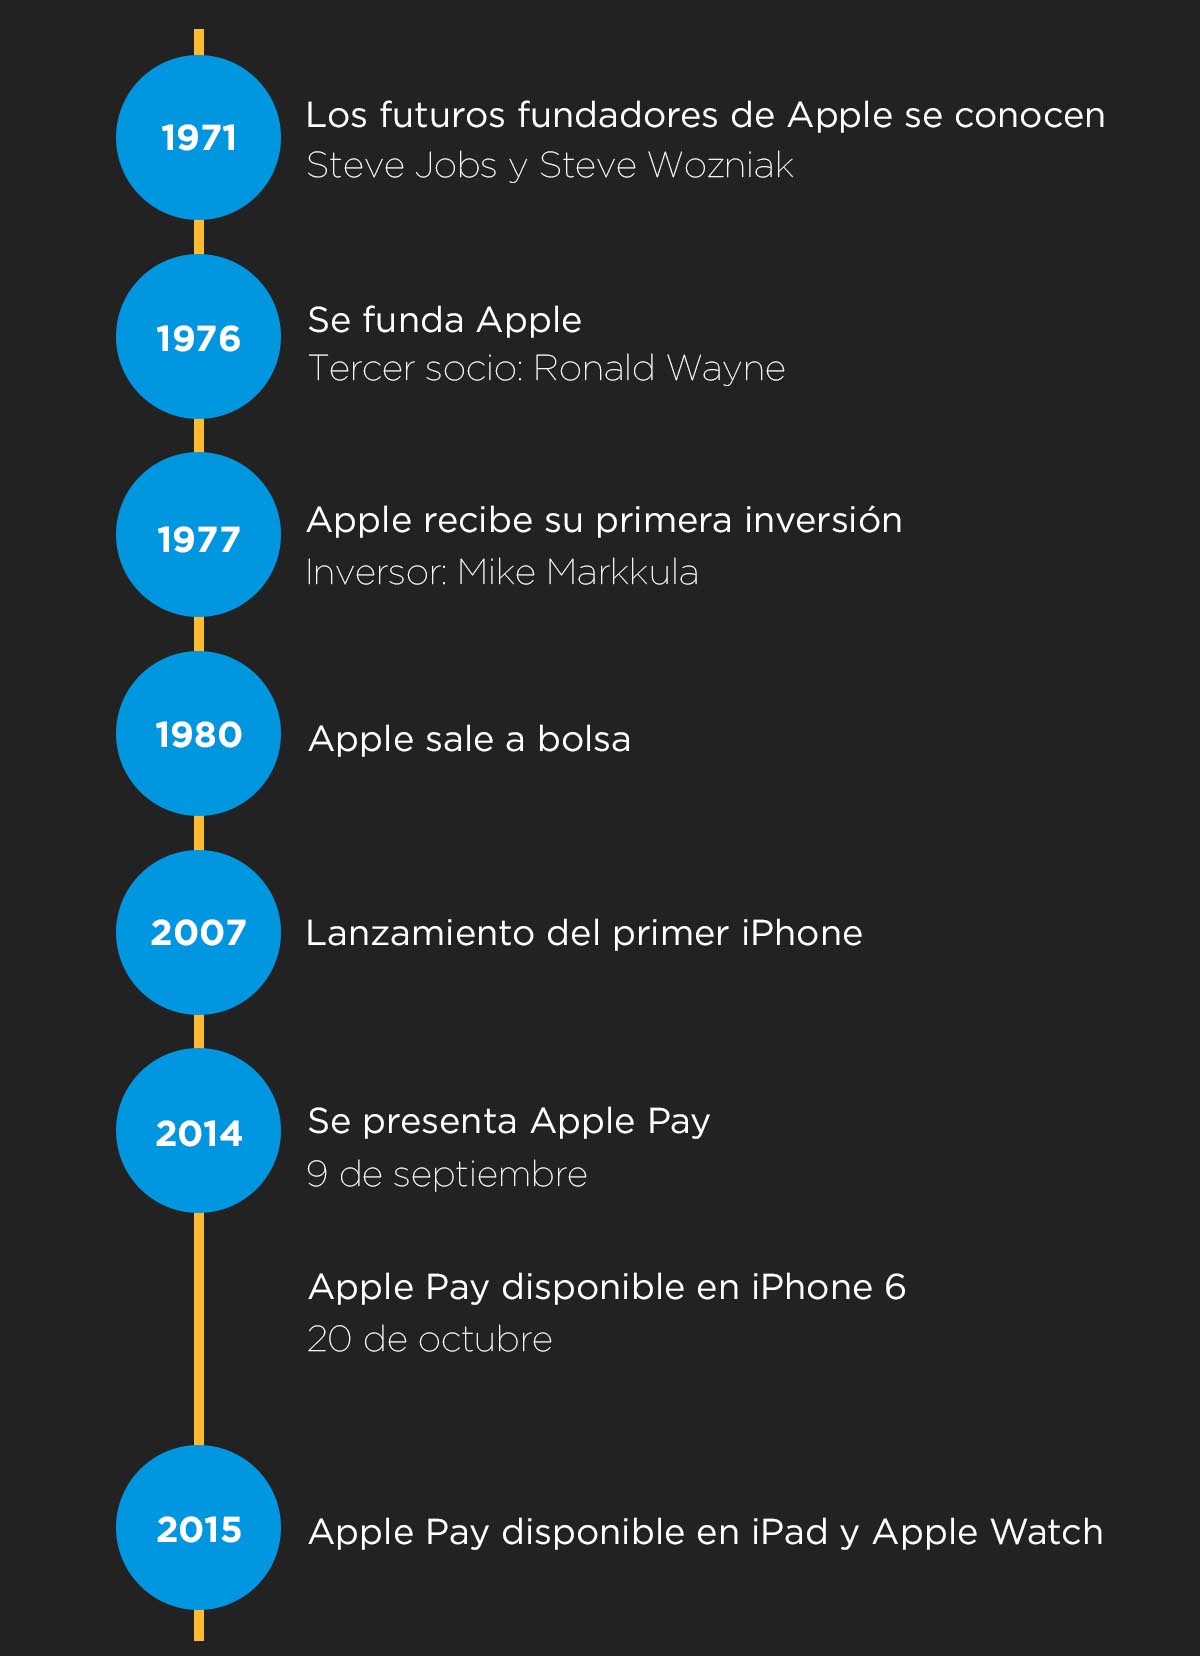 Historia de Apple hasta el lanzamiento de Apple Pay